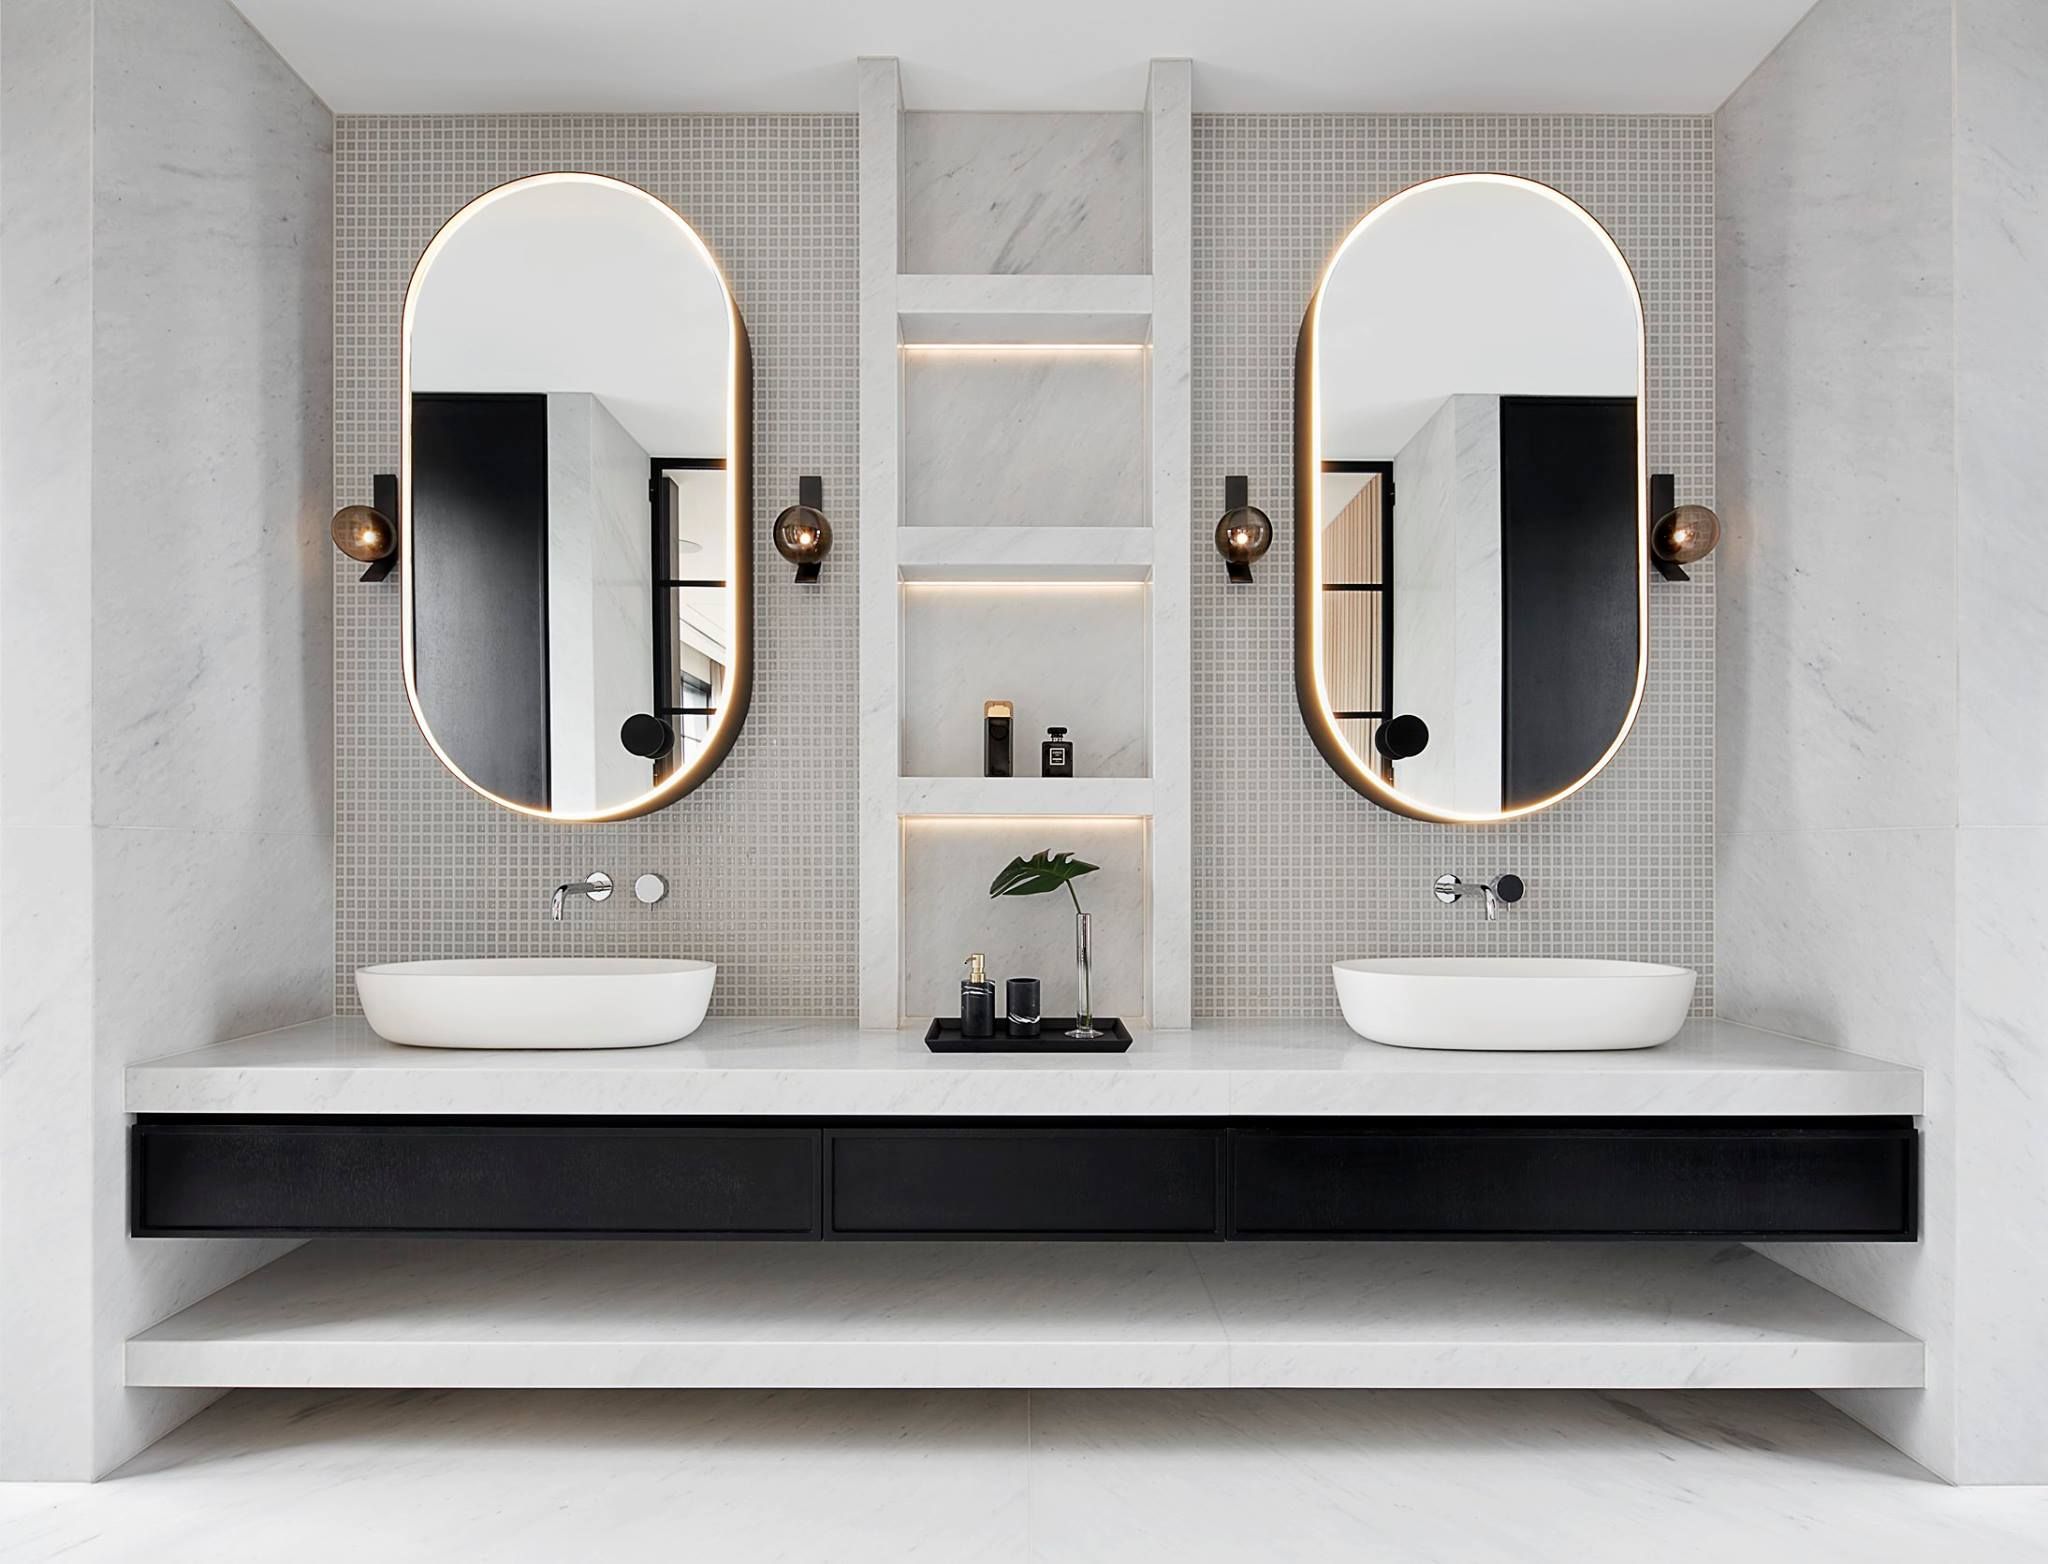 Badrumsinspiration - Modernt badrum med snygga spegelskåp, badrumslampor och mosaik.